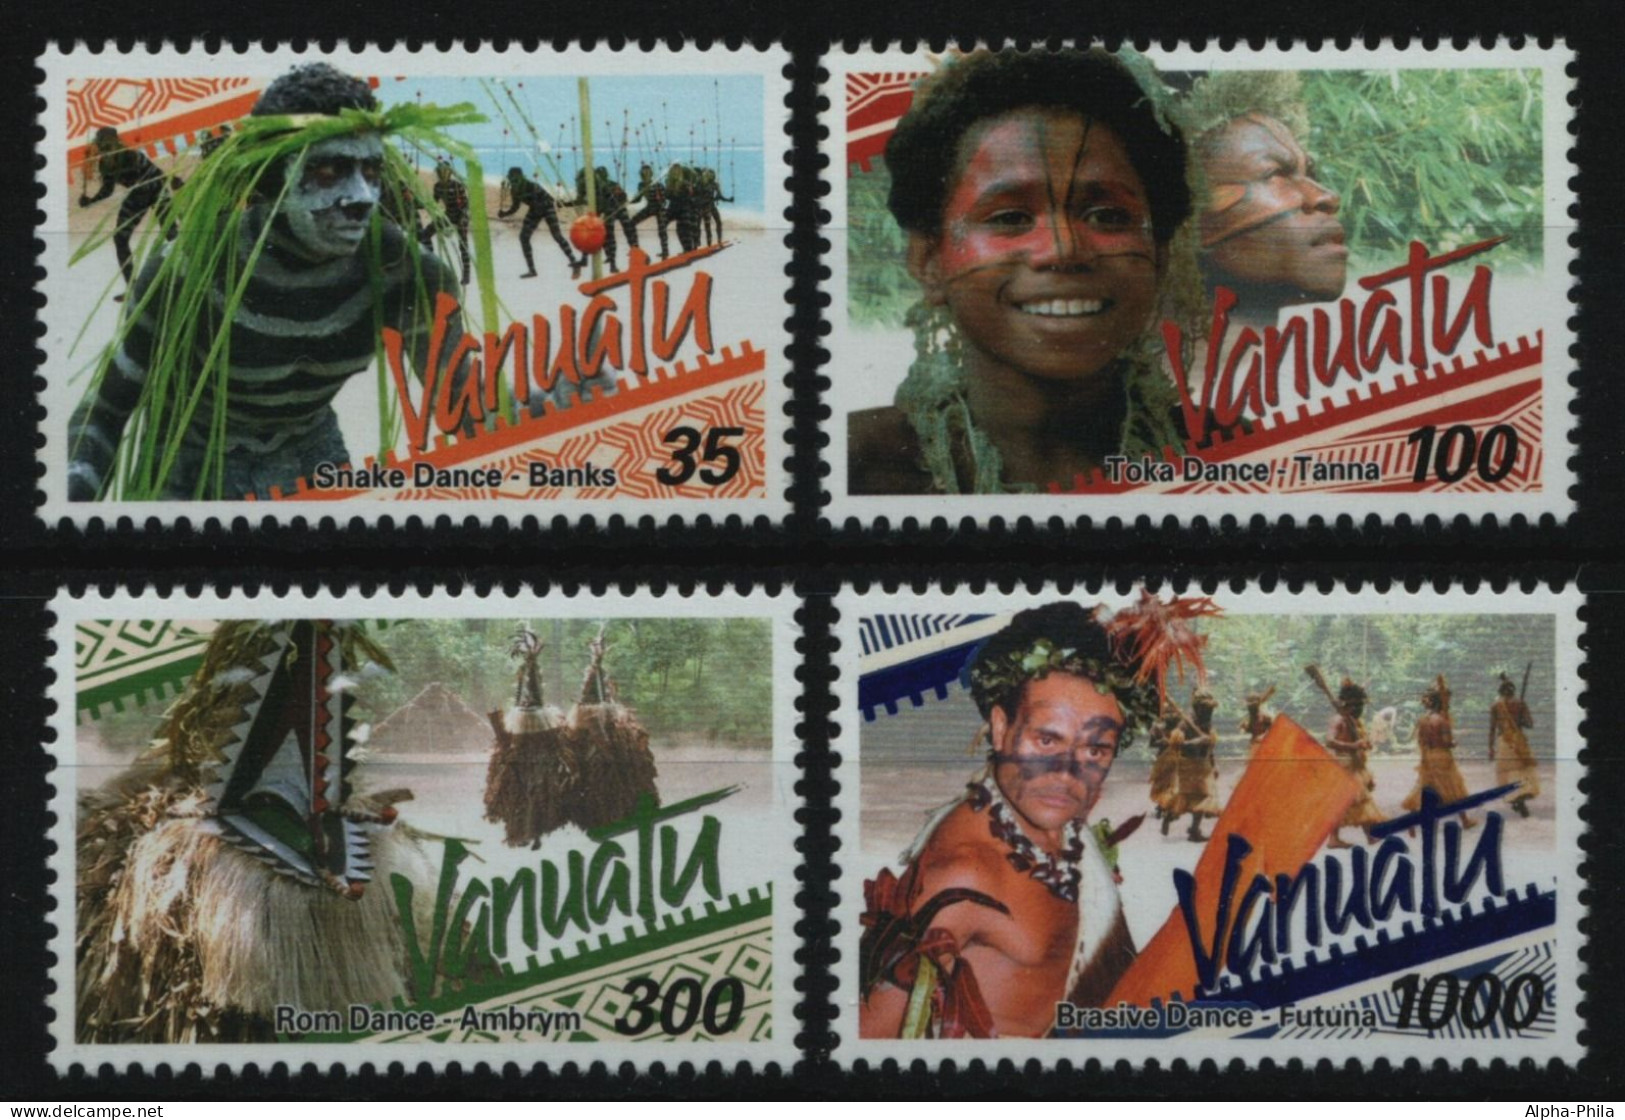 Vanuatu 2001 - Mi-Nr. 1141-1144 ** - MNH - Traditionelle Tänze - Vanuatu (1980-...)